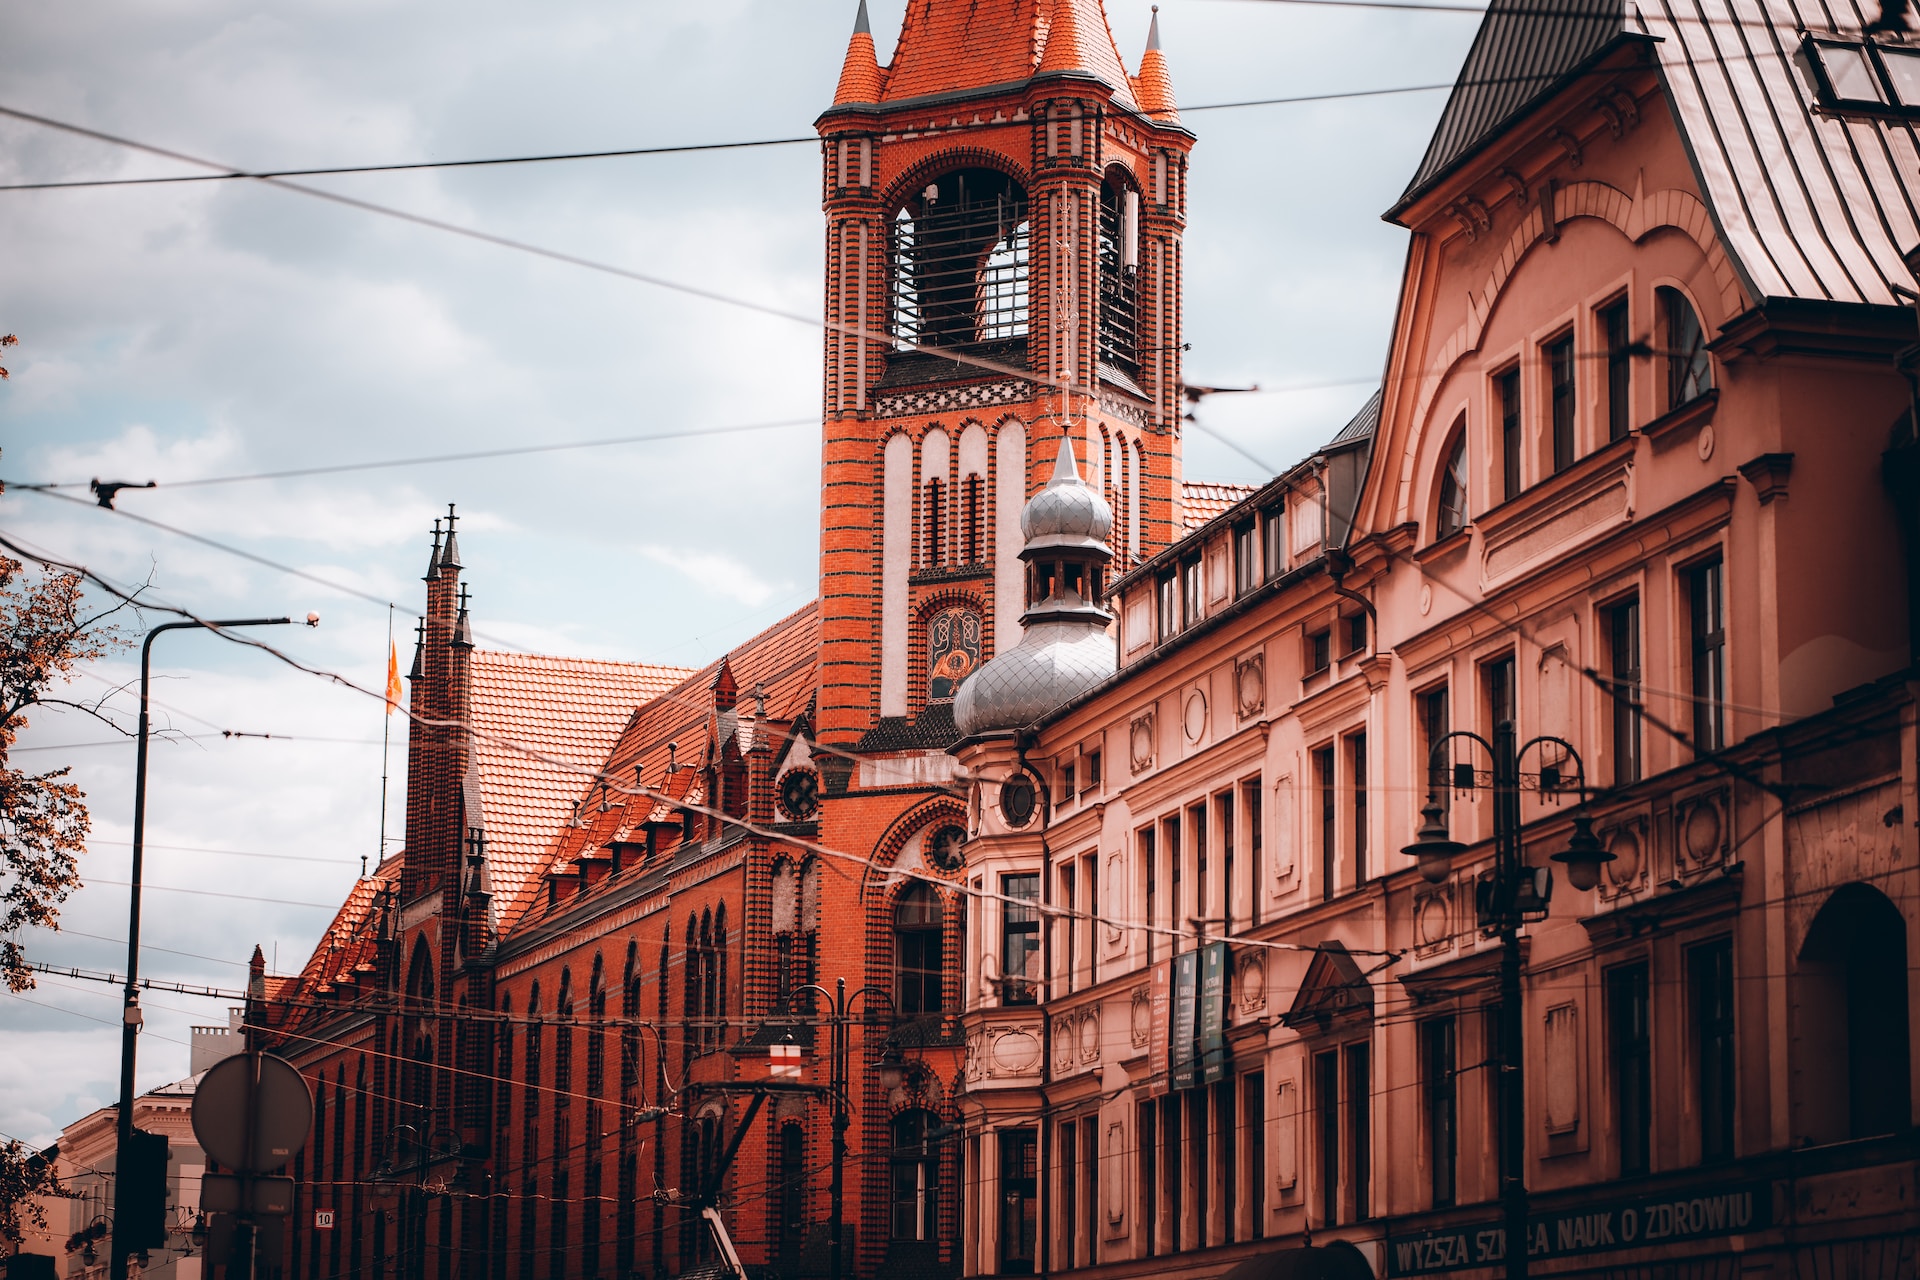 Co warto zwiedzić w Bydgoszczy? Top 10 atrakcji według ERC